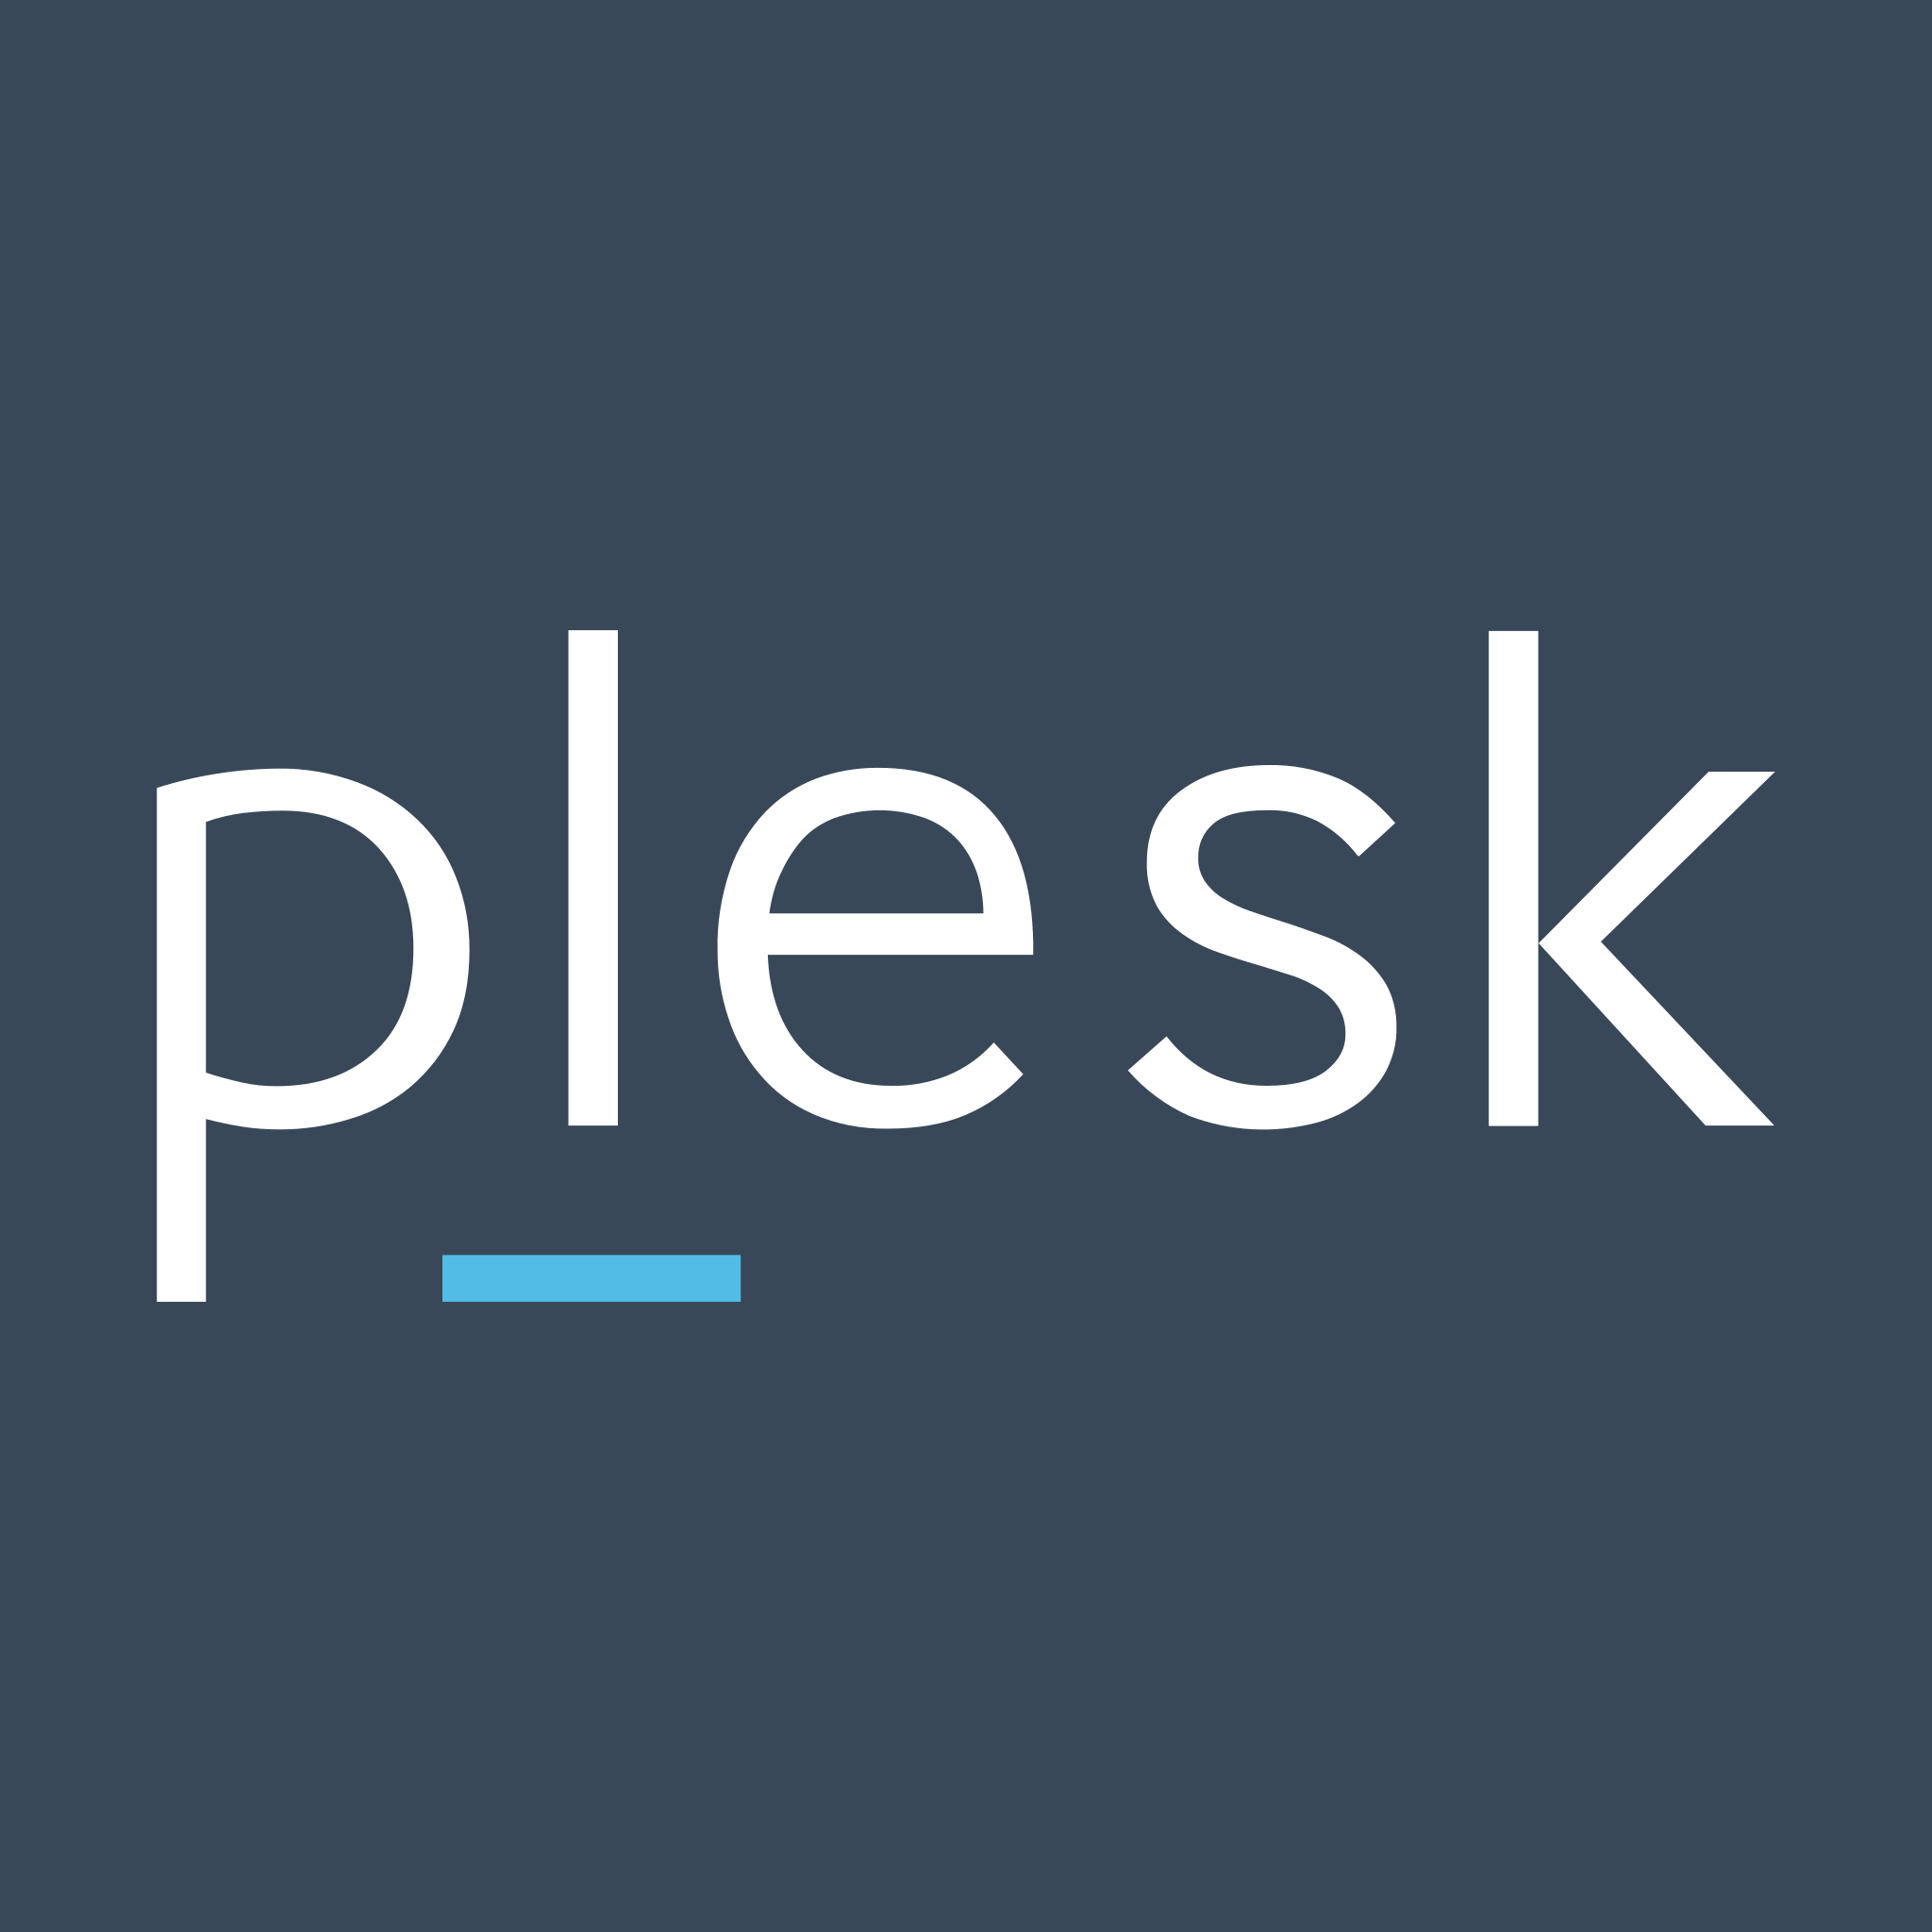 Plesk Physical Server